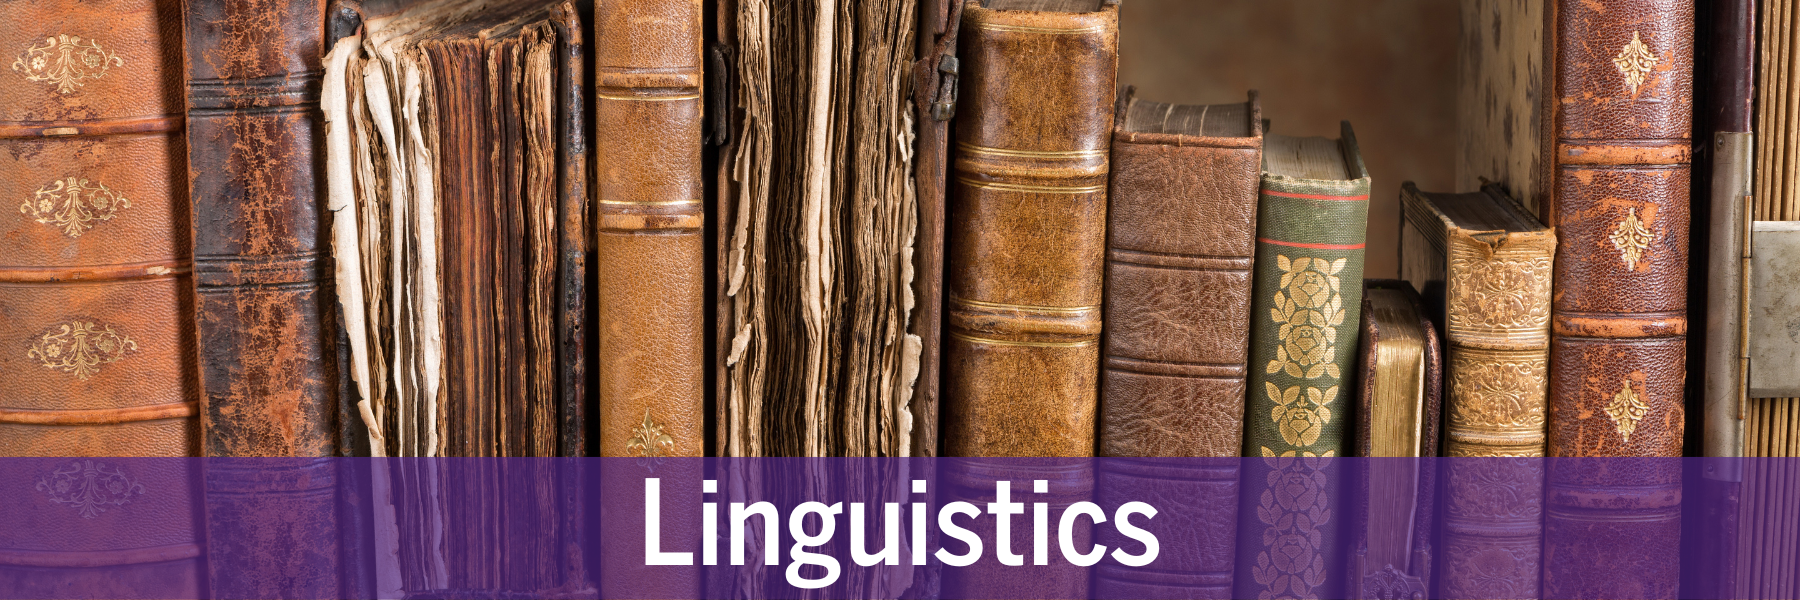 Linguistics-1.png